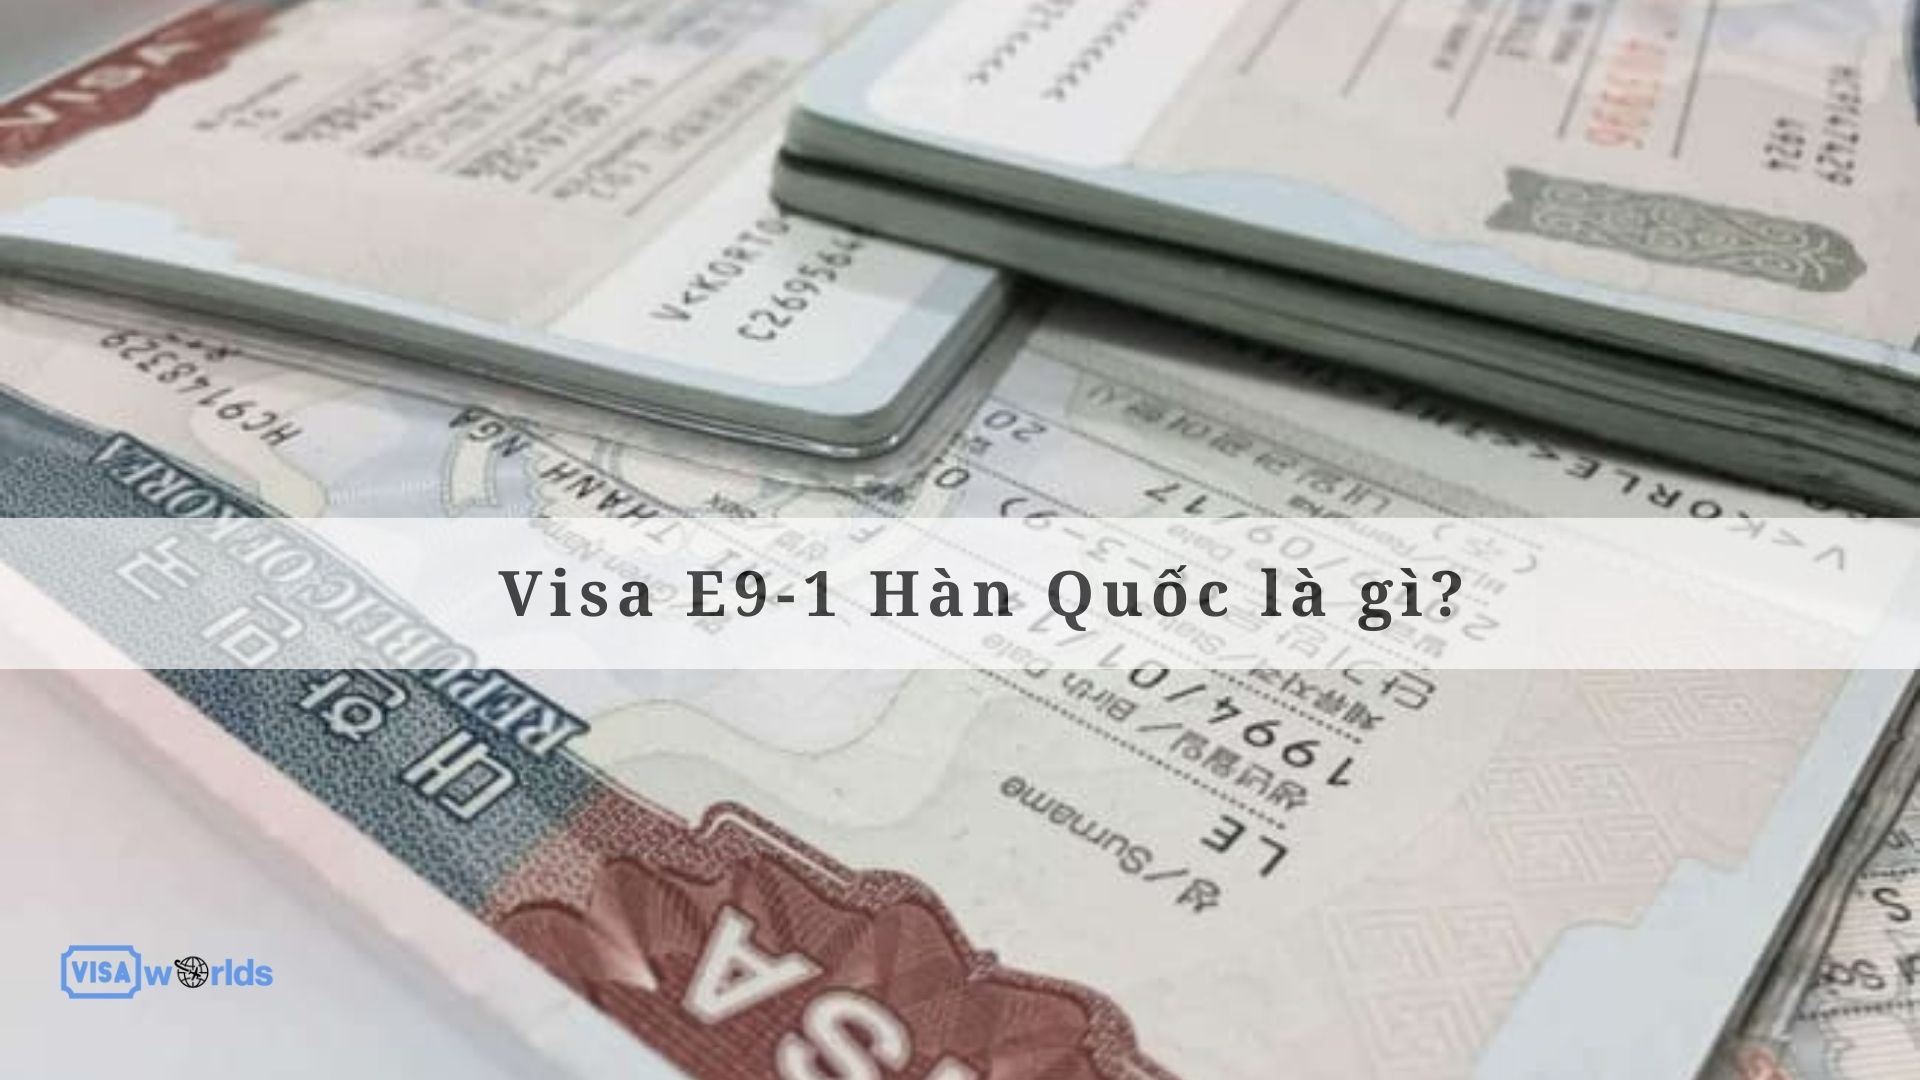 Visa E9-1 Hàn Quốc là gì